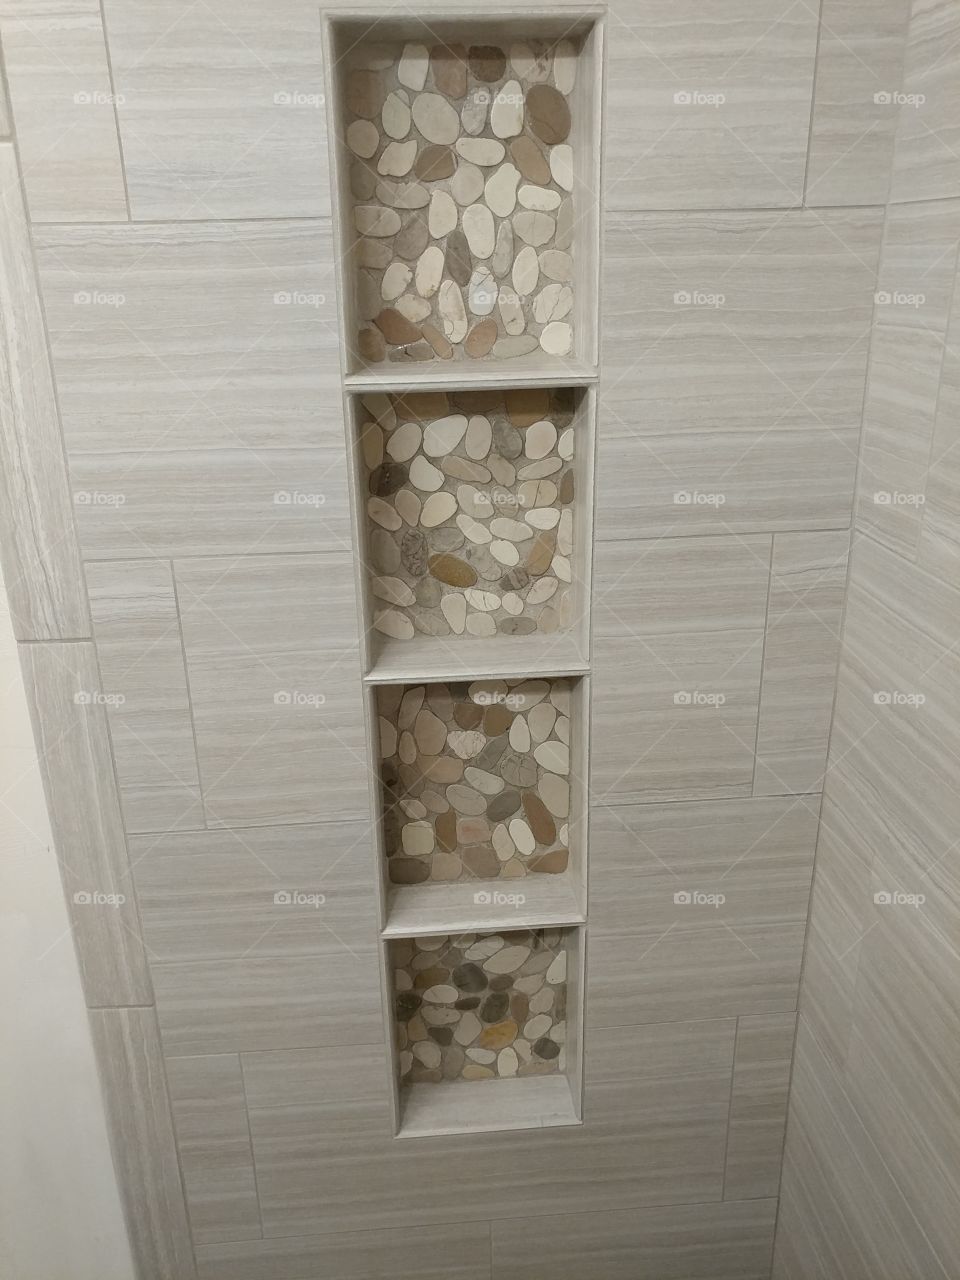 4 shelf niche in shower